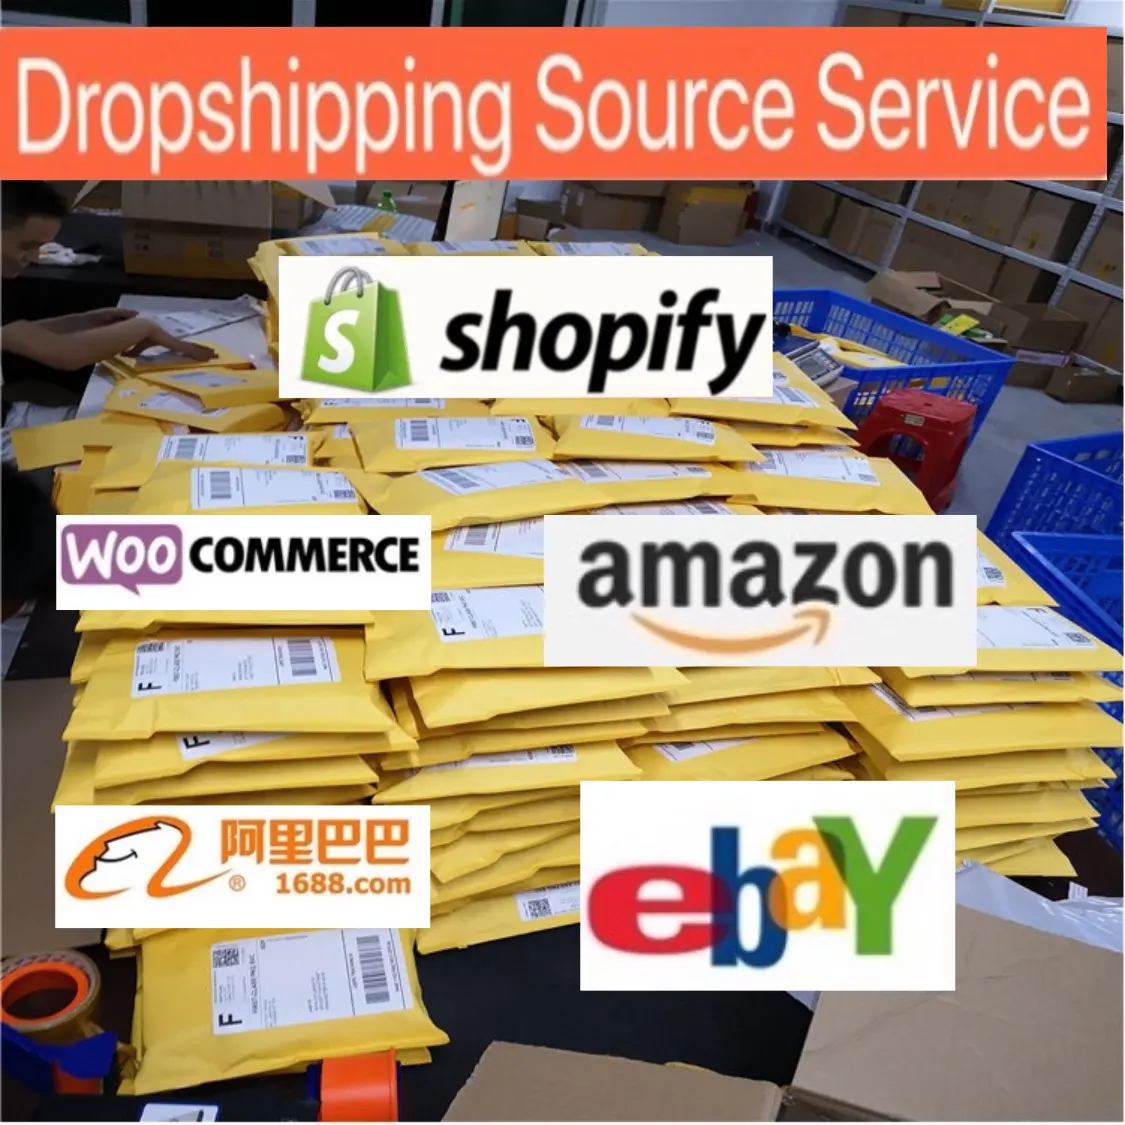 Поставщик прямых поставок из Китая и главный центр оформления заказов предоставляет услуги на Ebay. Желаю Shopify онлайн-розничным торговцам